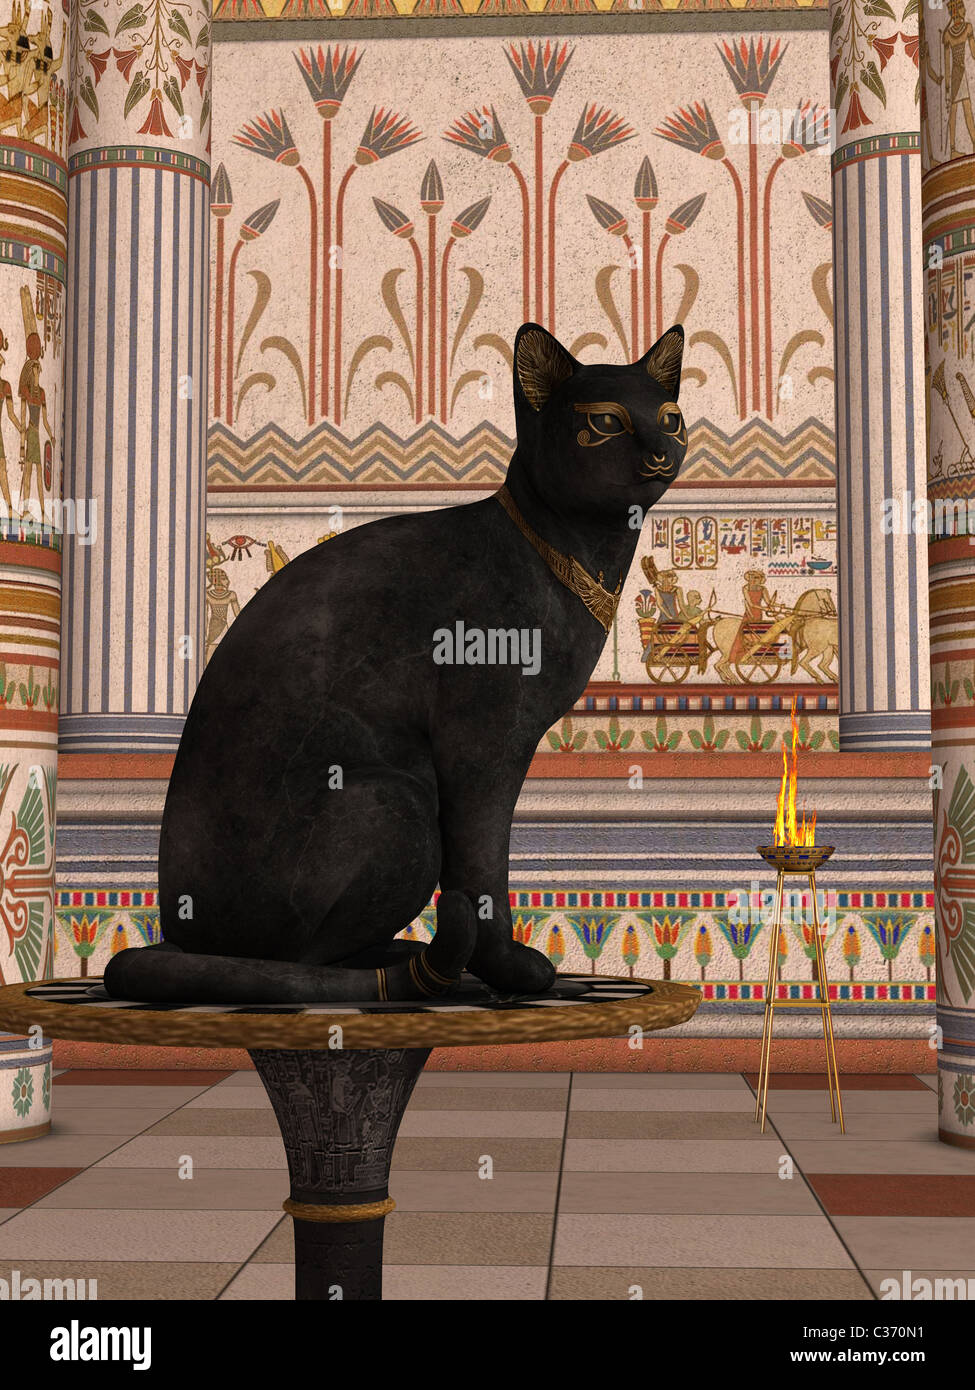 Dio gatto immagini e fotografie stock ad alta risoluzione - Alamy